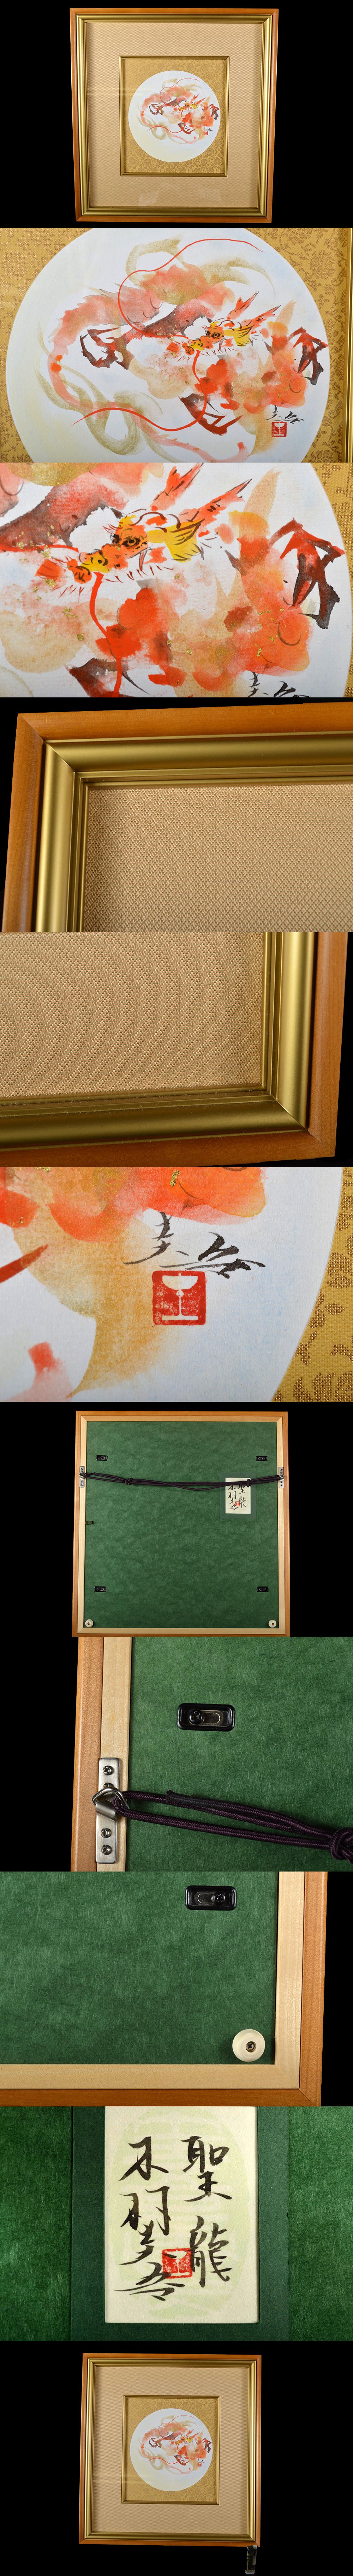 人気超激安某有名資産家買取品 希少 天才画家 木村圭吾 『聖龍』 額装 古美術品(日本画旧家蔵出)AC9332 DTDB145f 花鳥、鳥獣